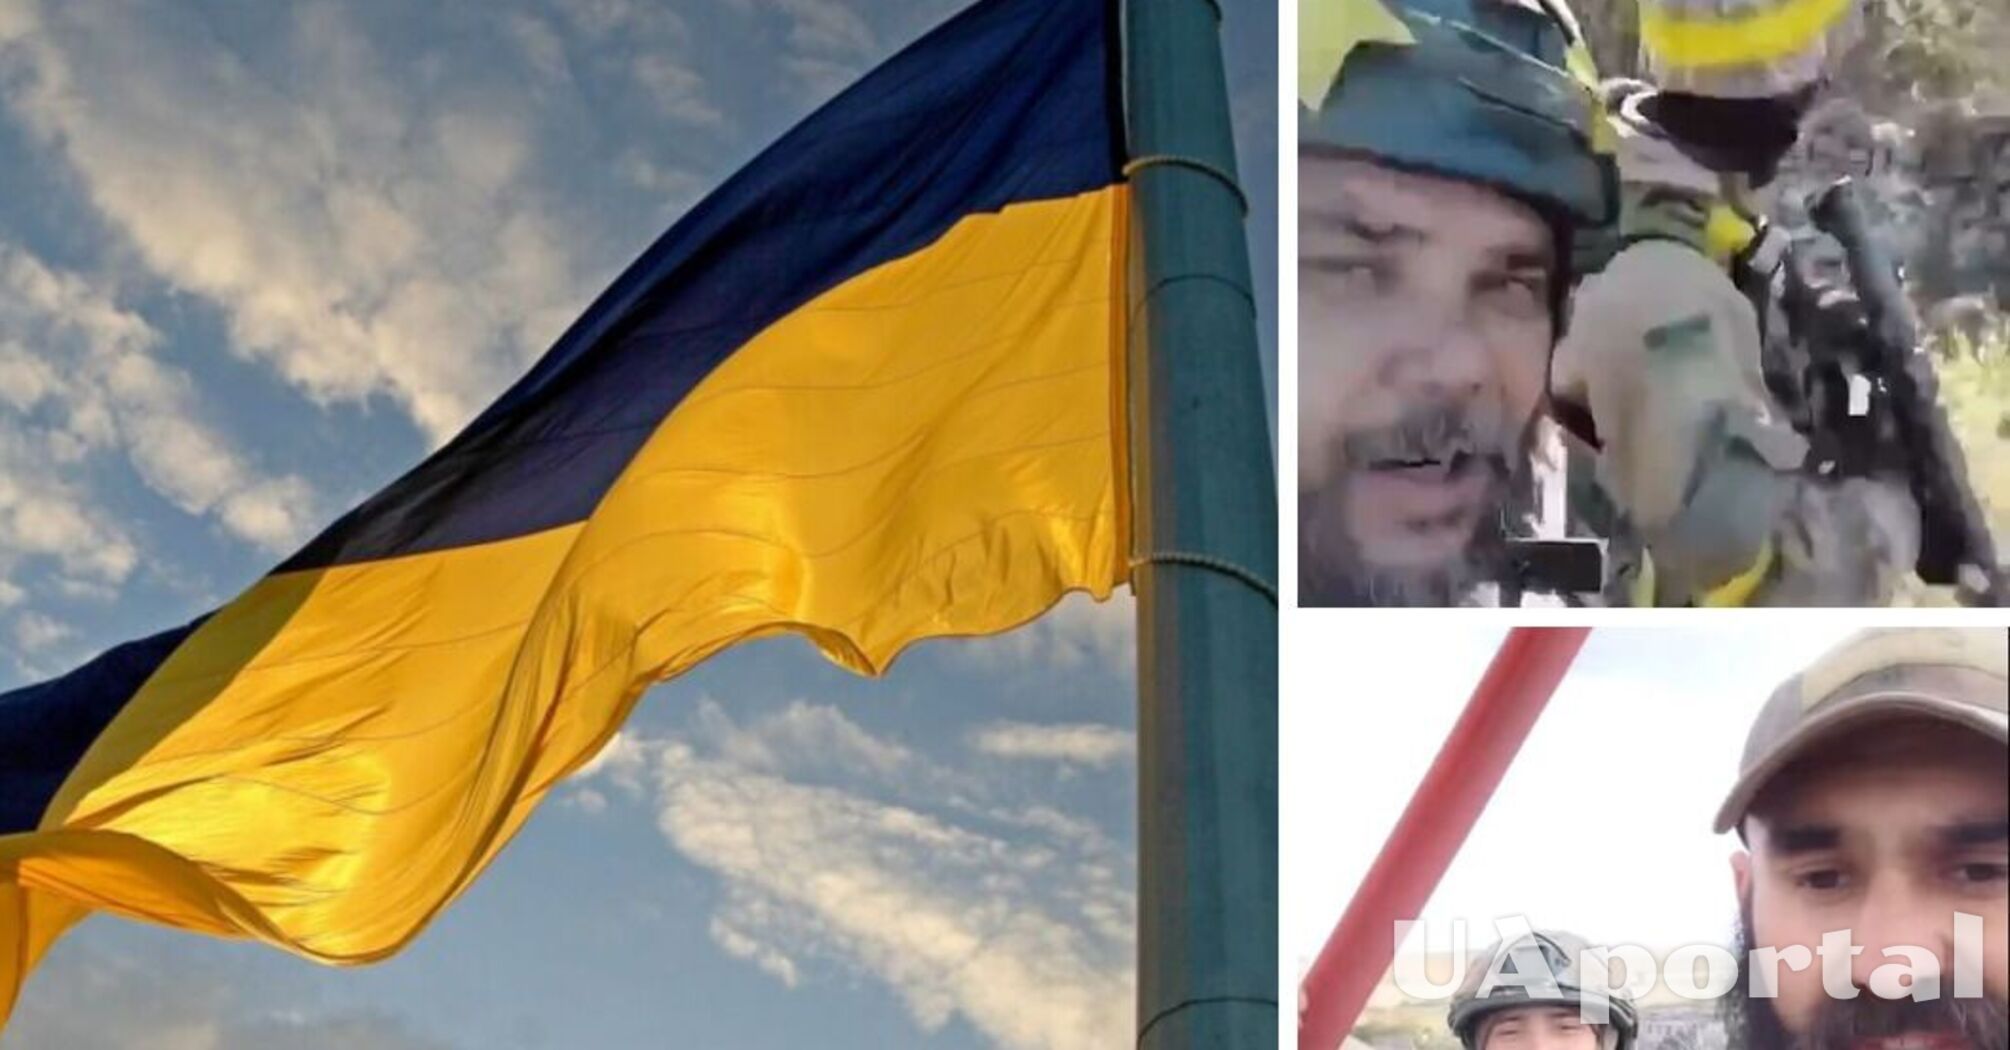 Ще над двома населеними пунктами на Херсонщині здійняли українські прапори (відео)